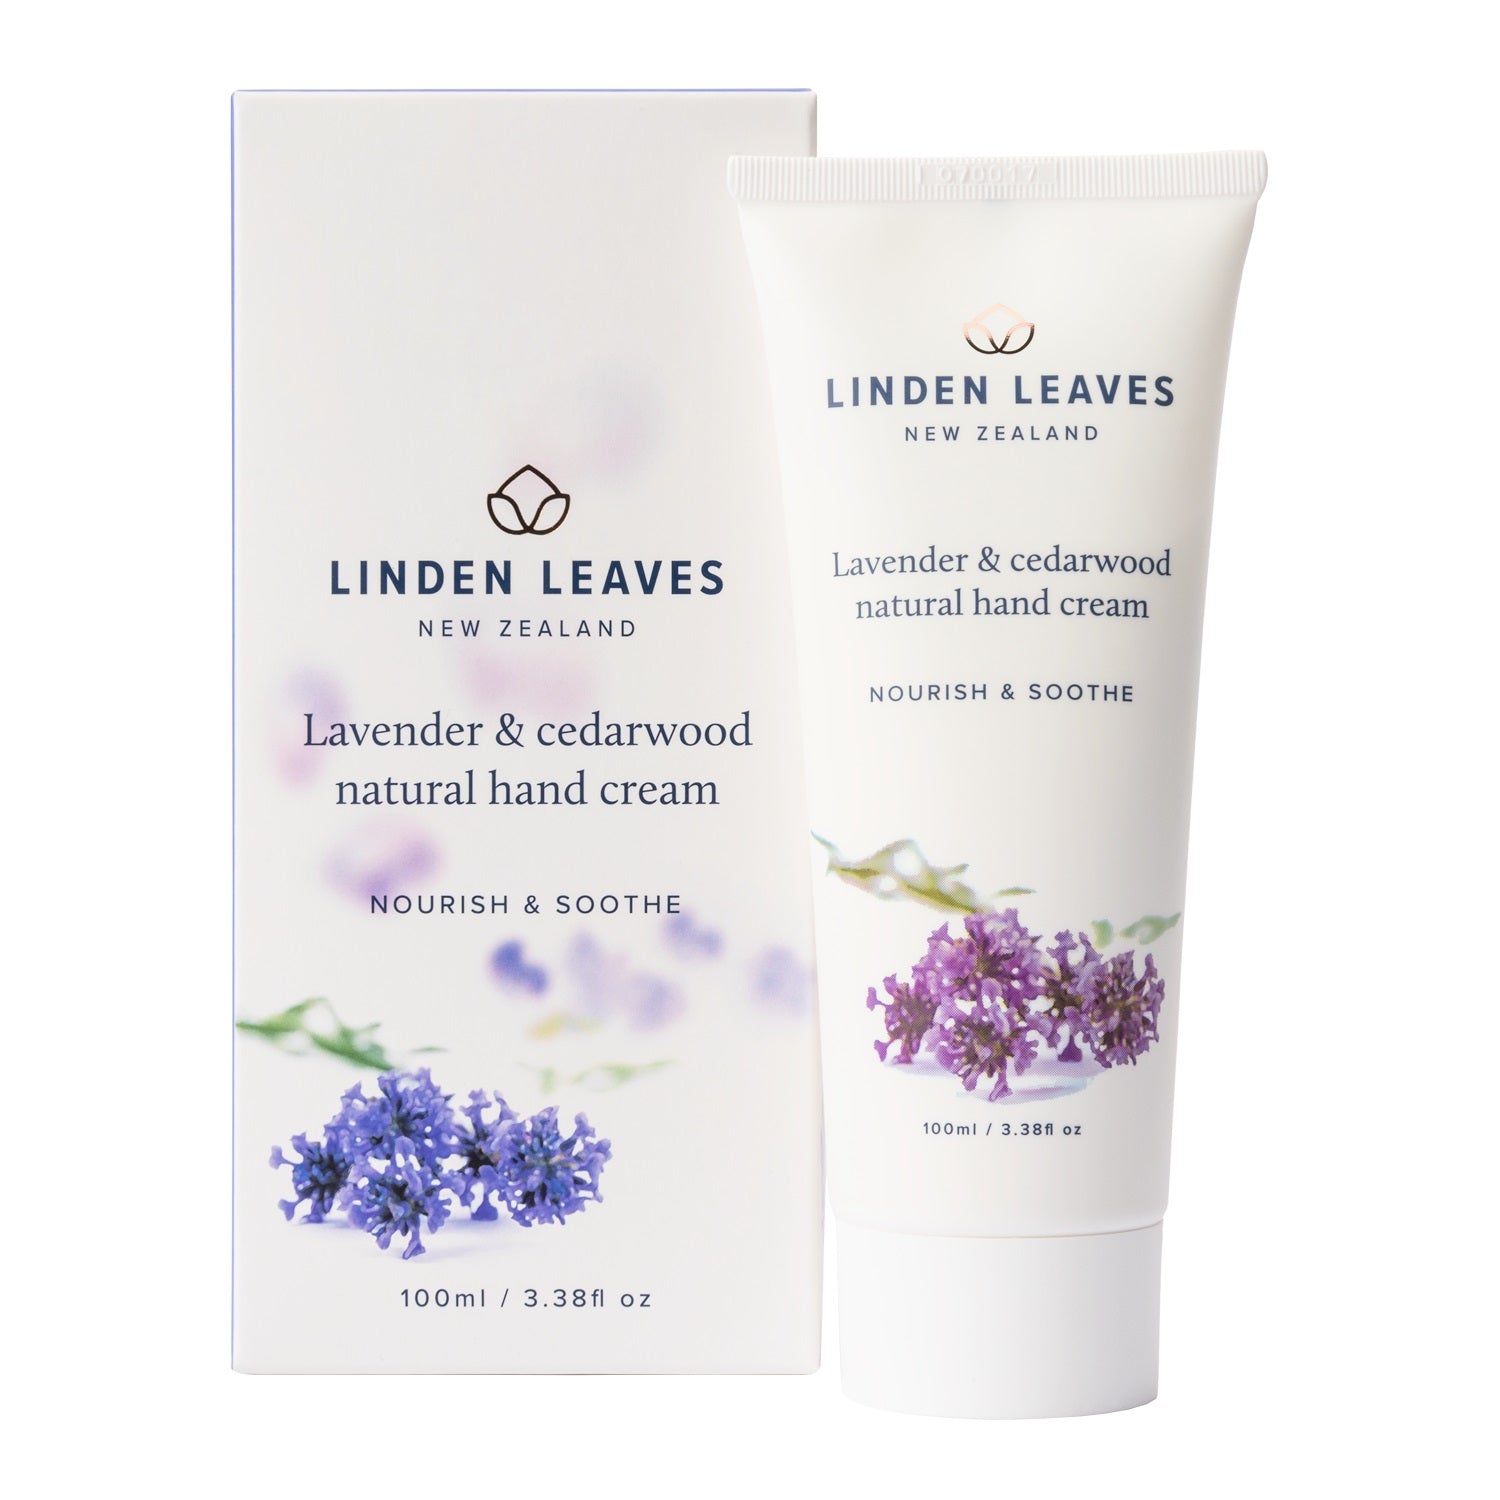 Linden Leaves Lavender & Cedarwood Natural Hand Cream 100ml.